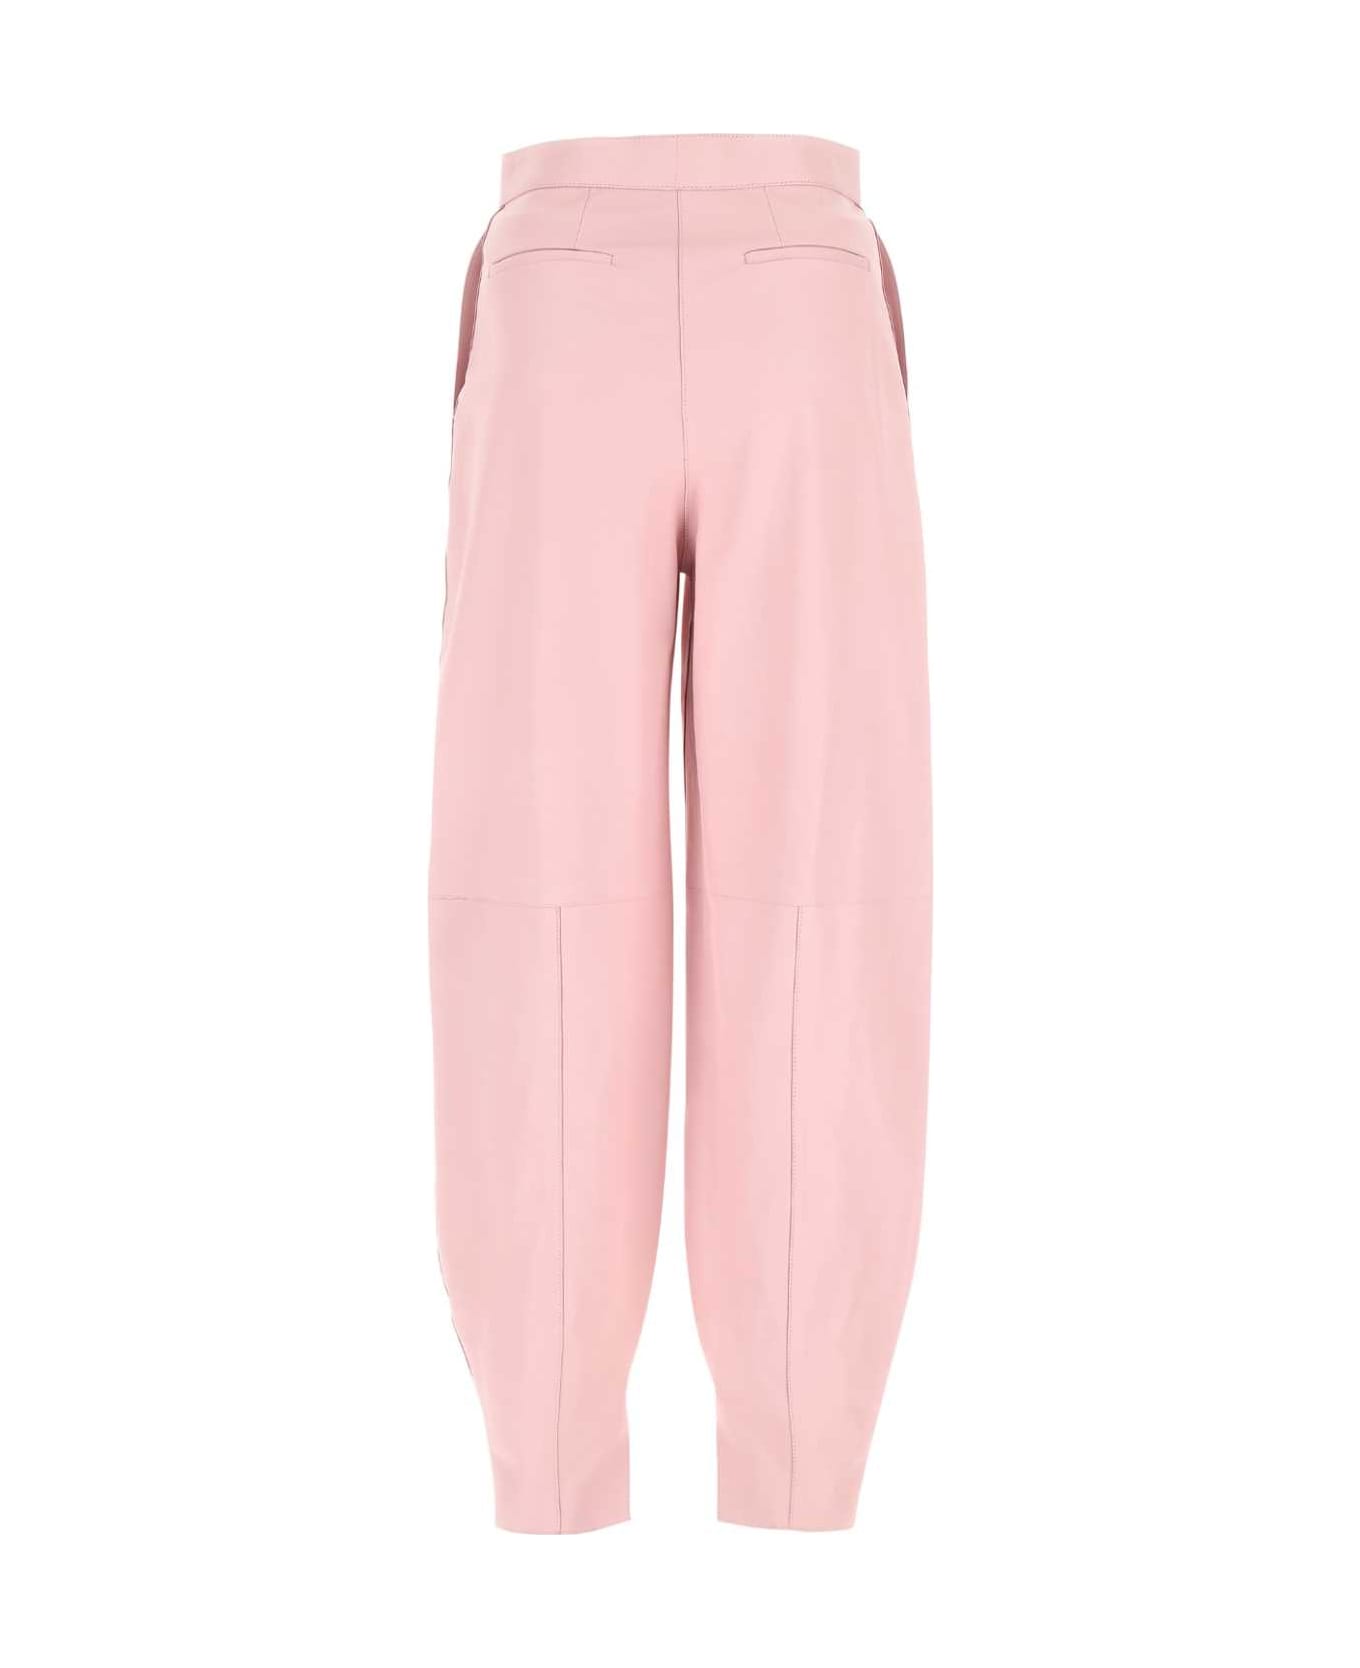 Loewe Pastel Pink Leather Pant - LIGHTPINK